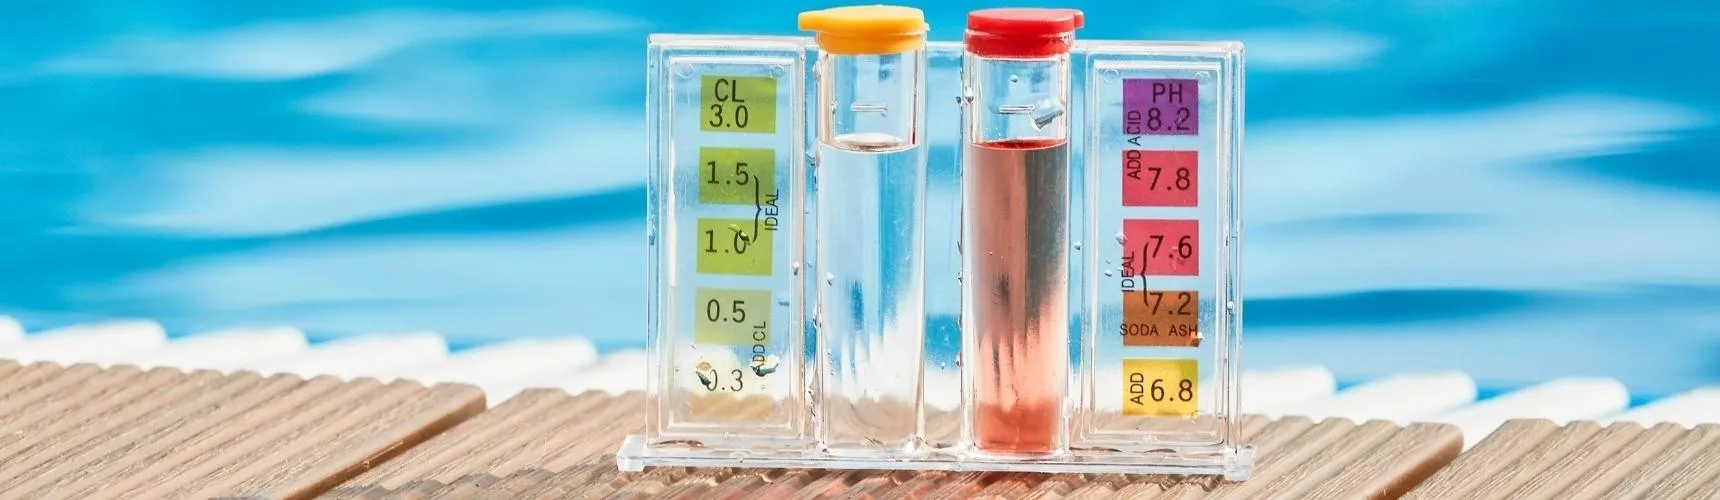 Jak správně měřit pH vody v bazénu?